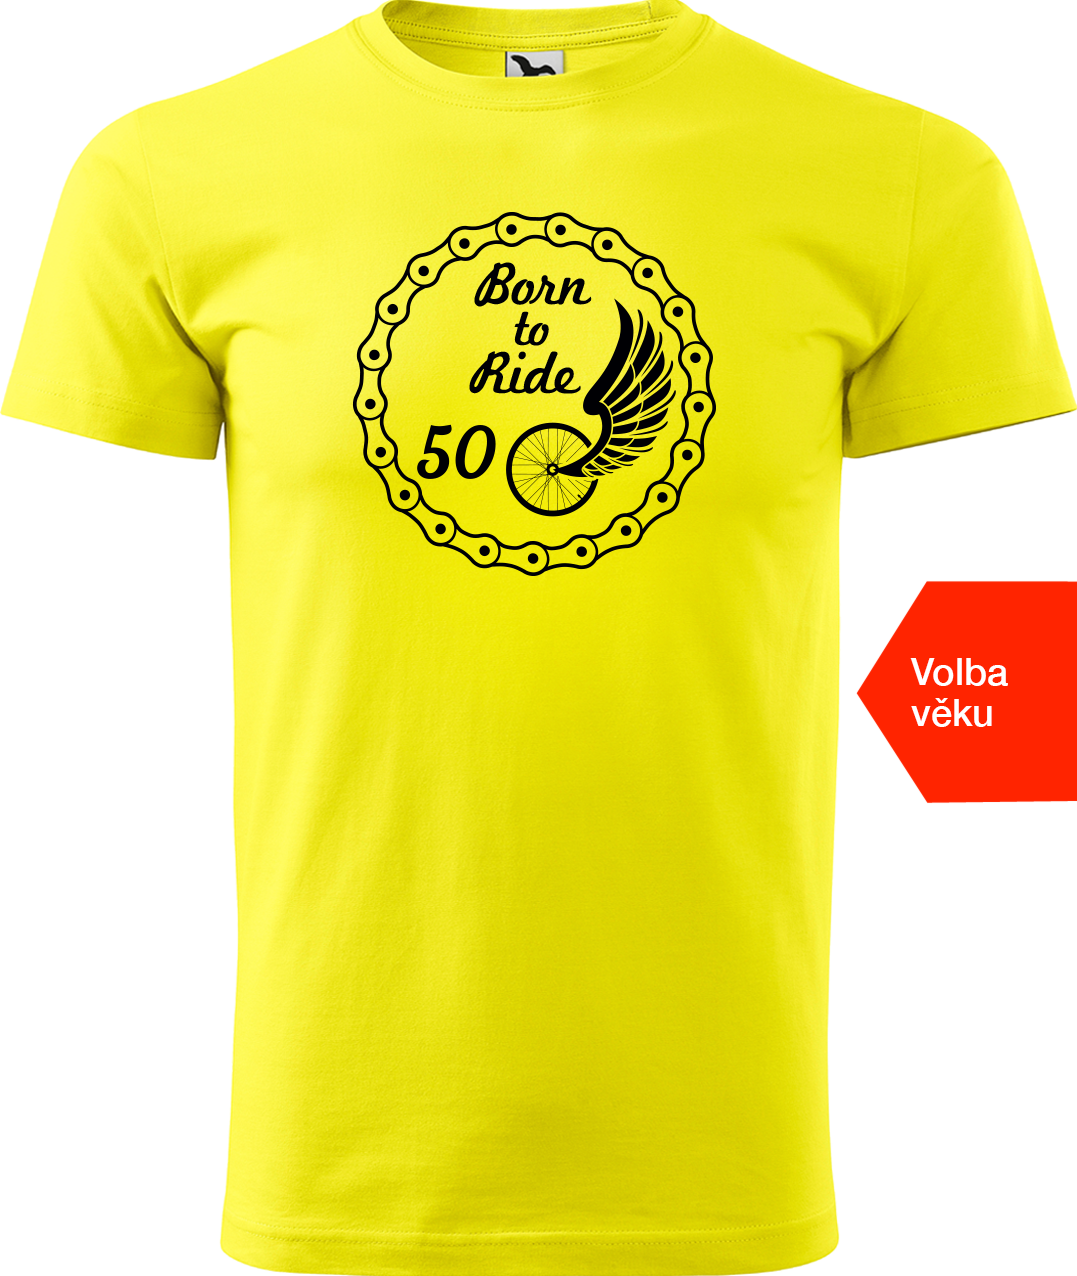 Pánské tričko pro cyklistu s věkem - Born to Ride (wings) Velikost: 2XL, Barva: Žlutá (04)